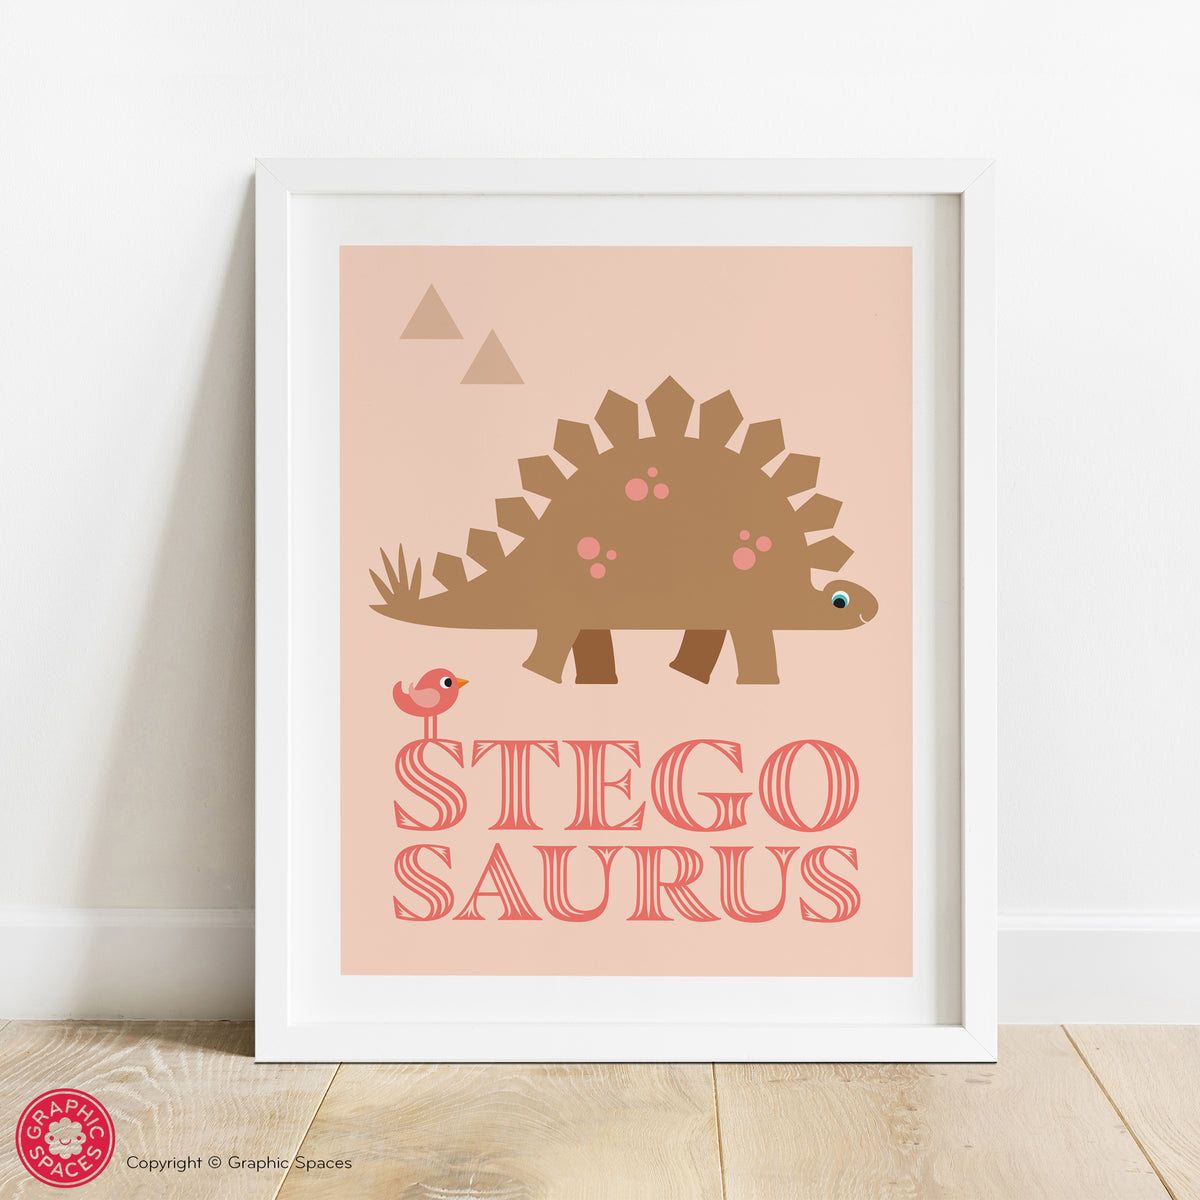 Stegosaurus nursery art print.